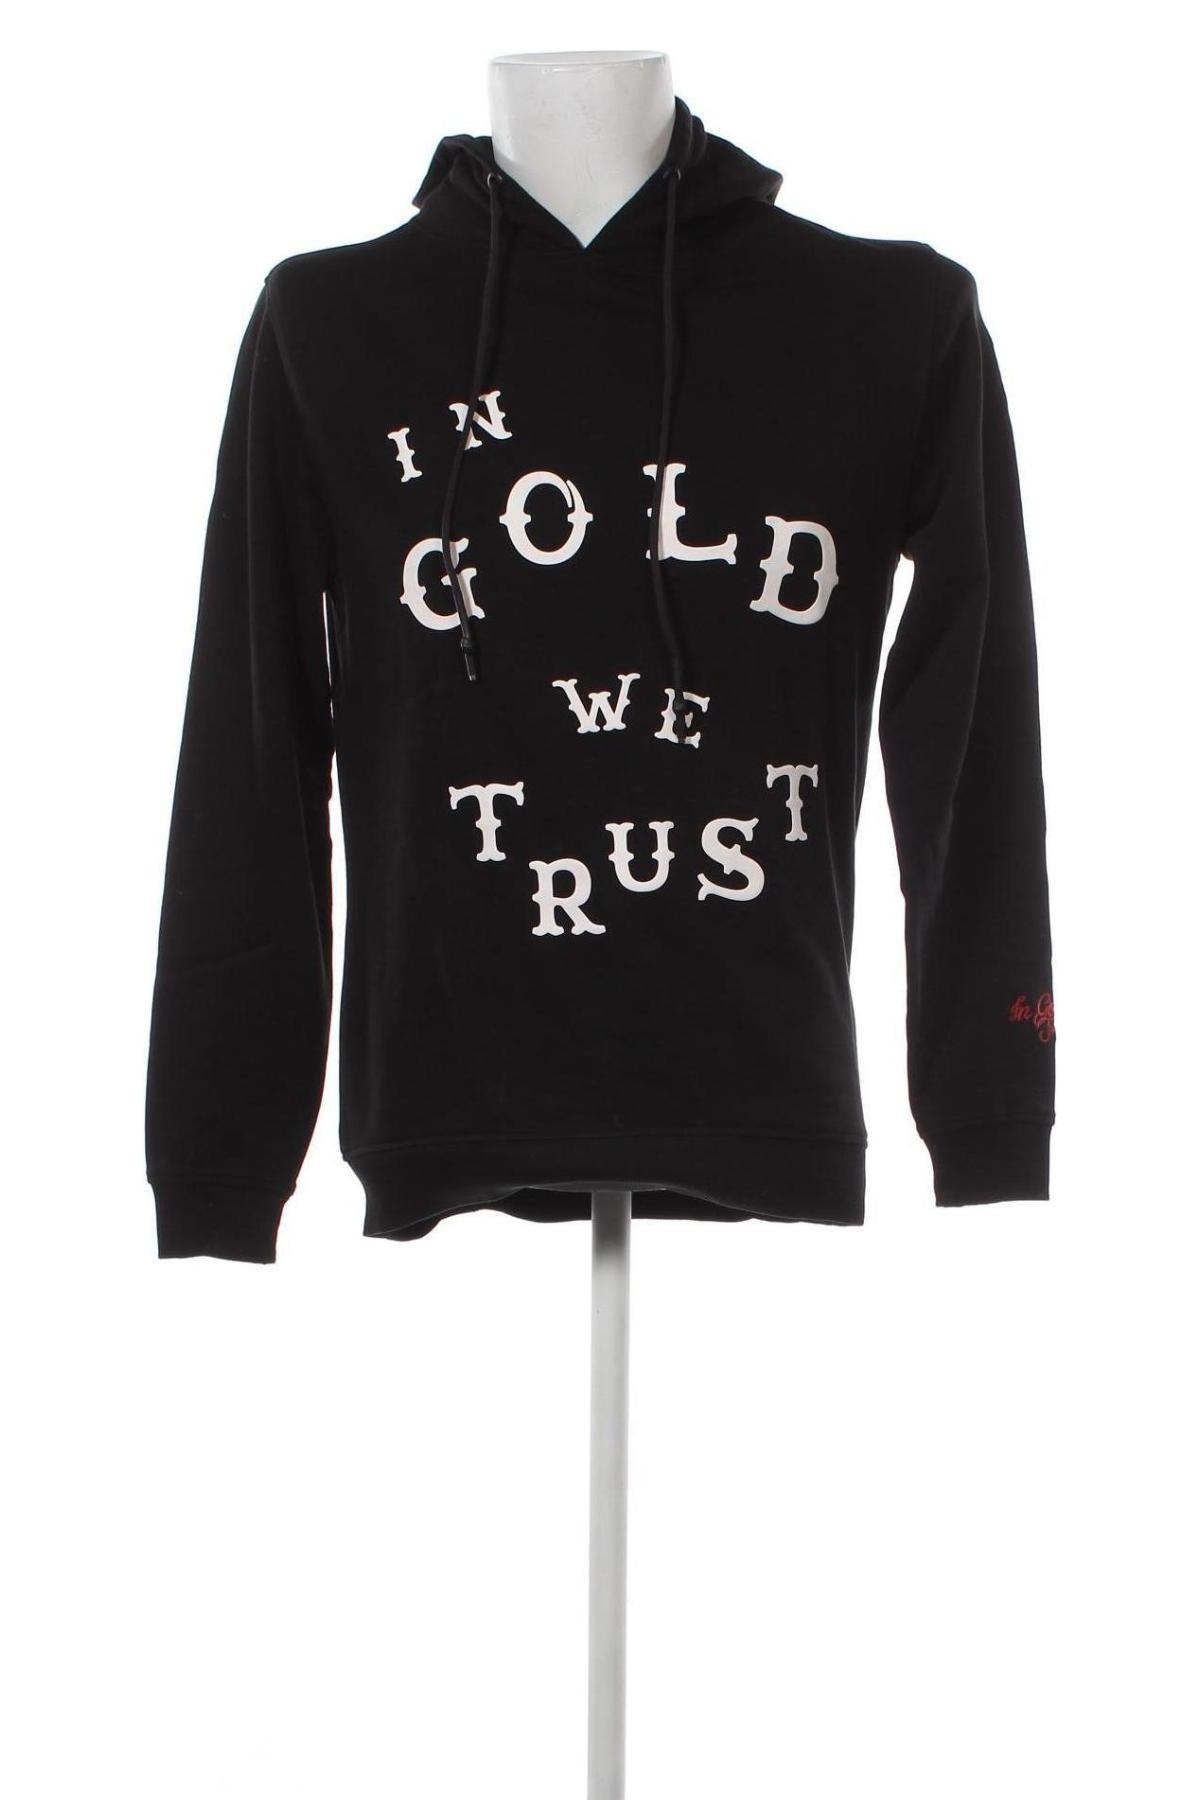 Herren Sweatshirt In Gold We Trust, Größe XS, Farbe Schwarz, Preis 10,25 €